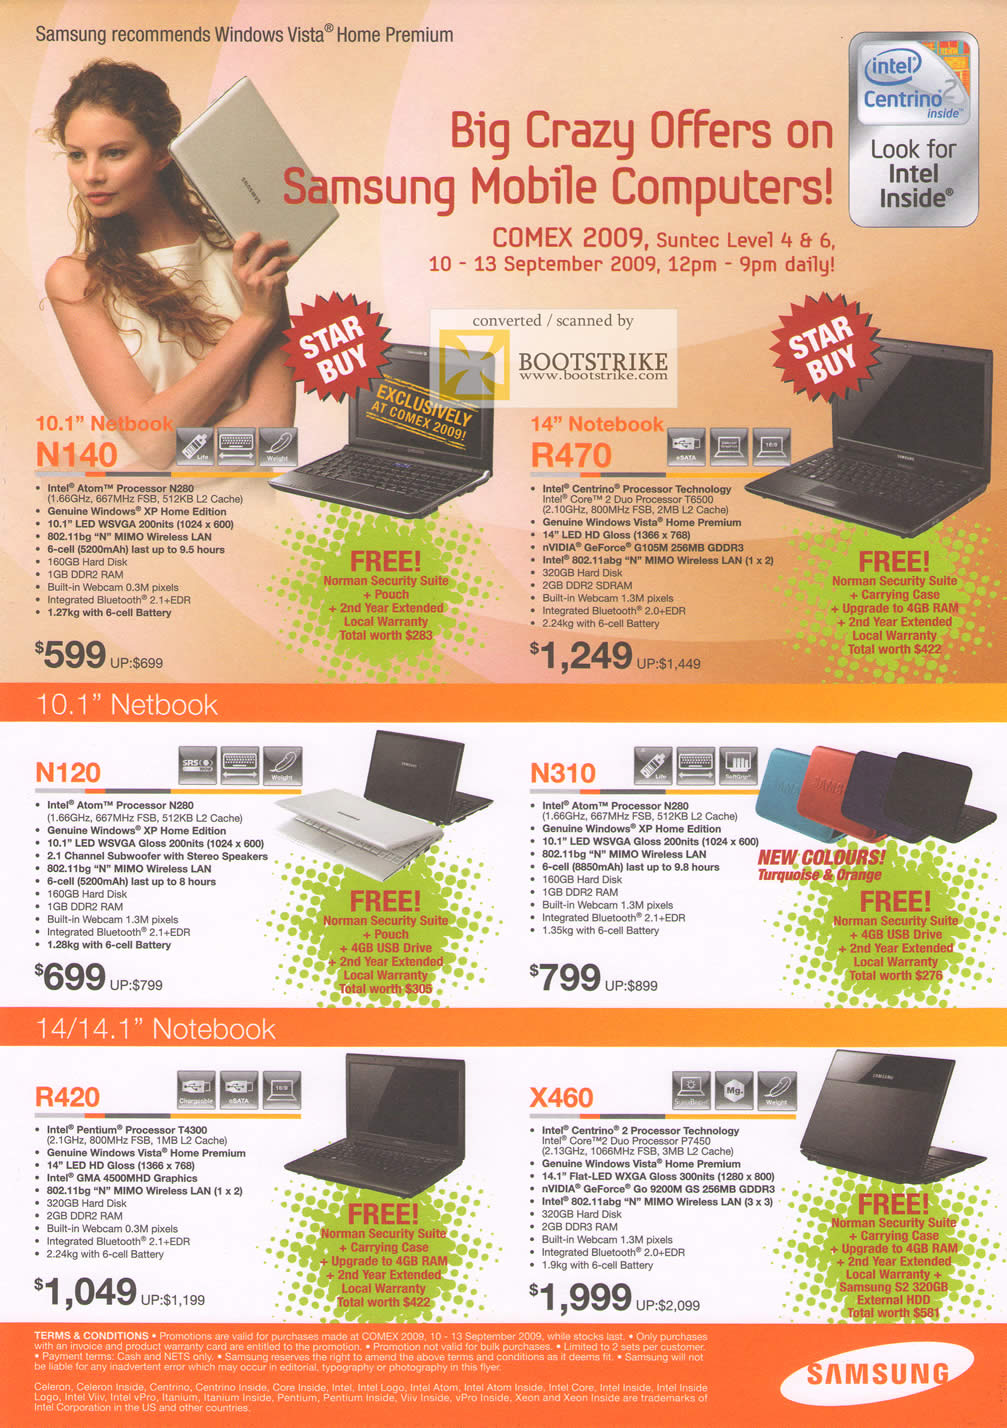 Comex 2009 price list image brochure of Samsung Mobile Computers Netbook Notebooks N140 R470 N120 N310 R420 X460